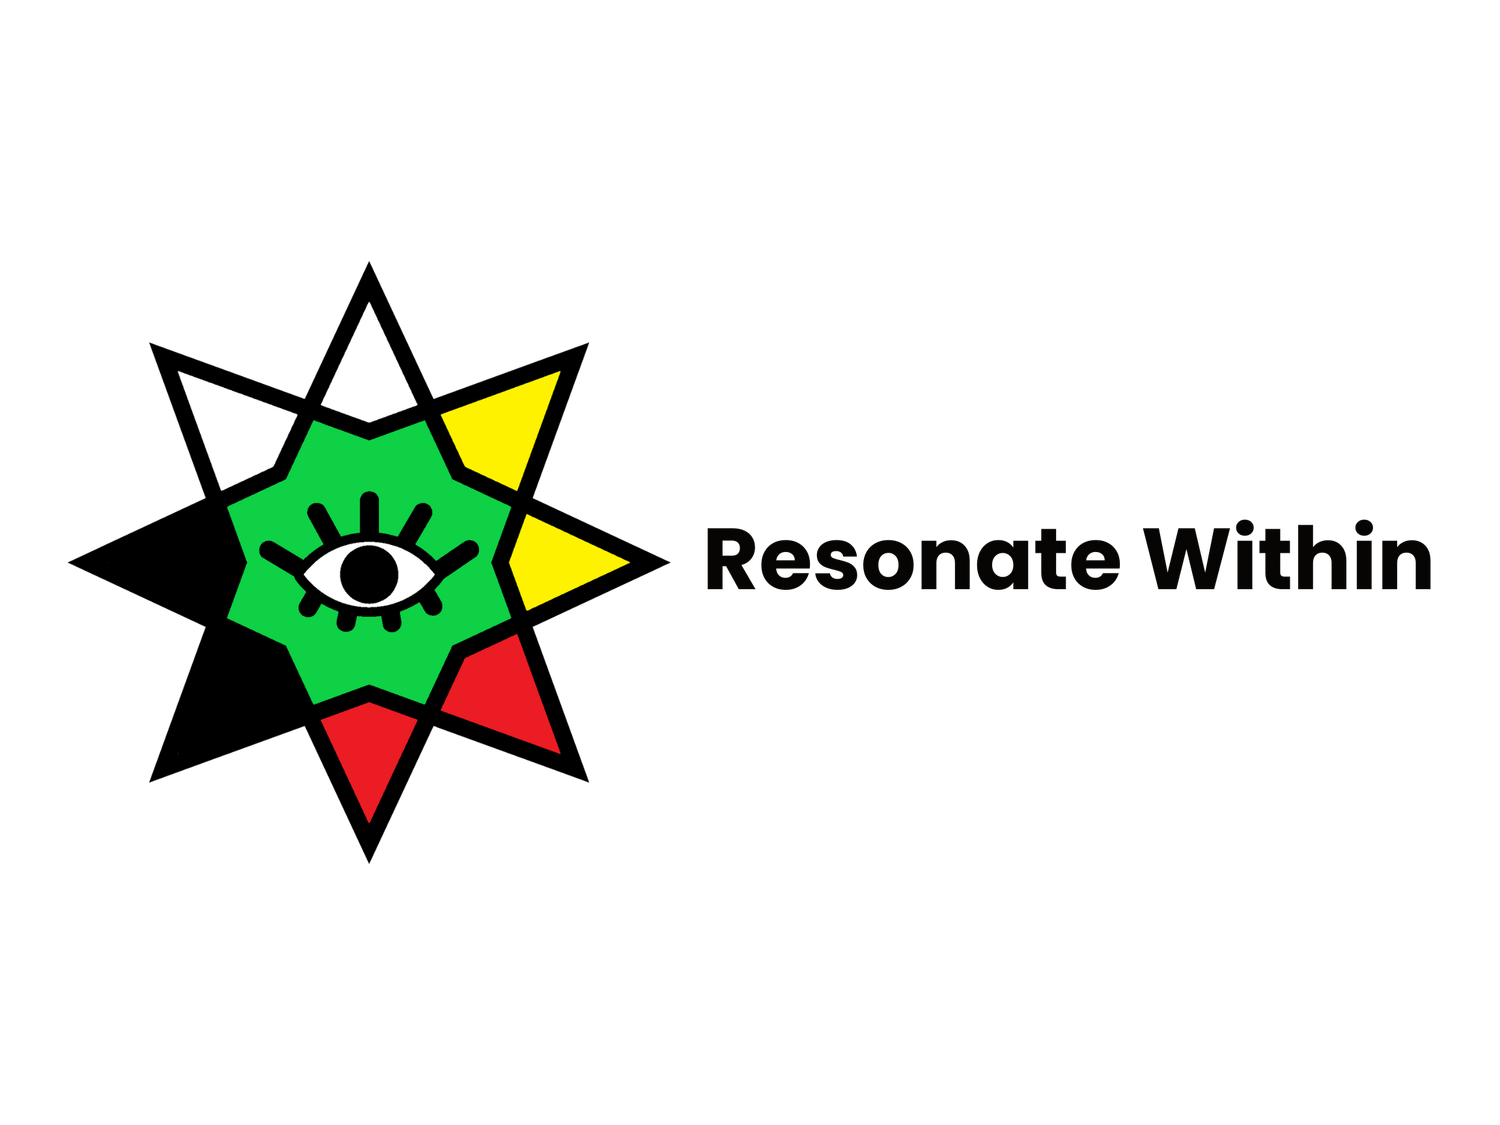 Resonate Within, LLC